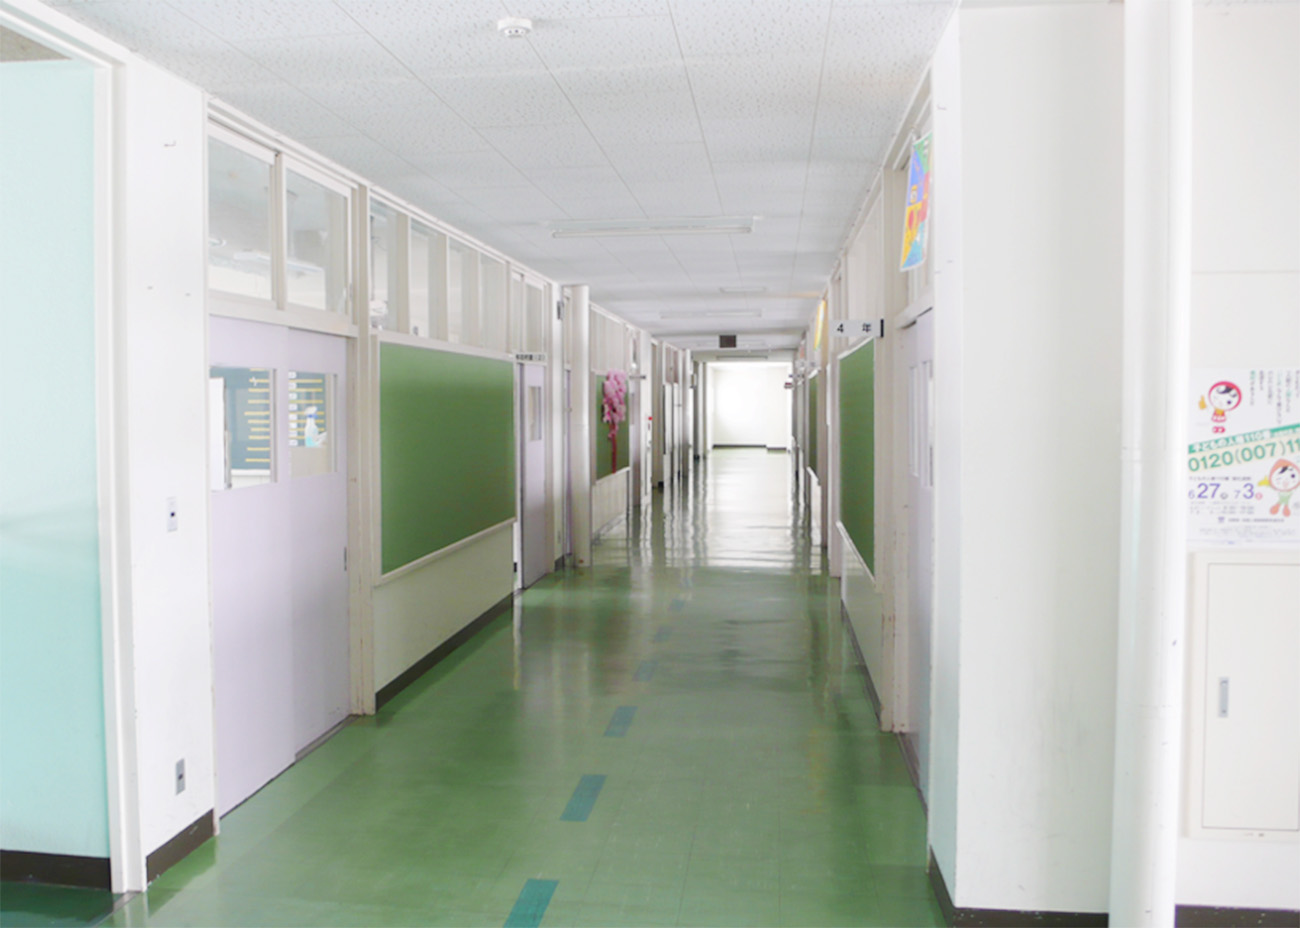 天井は低く、教室と廊下の壁も固定壁で仕切られており、光が入らず暗い雰囲気である。